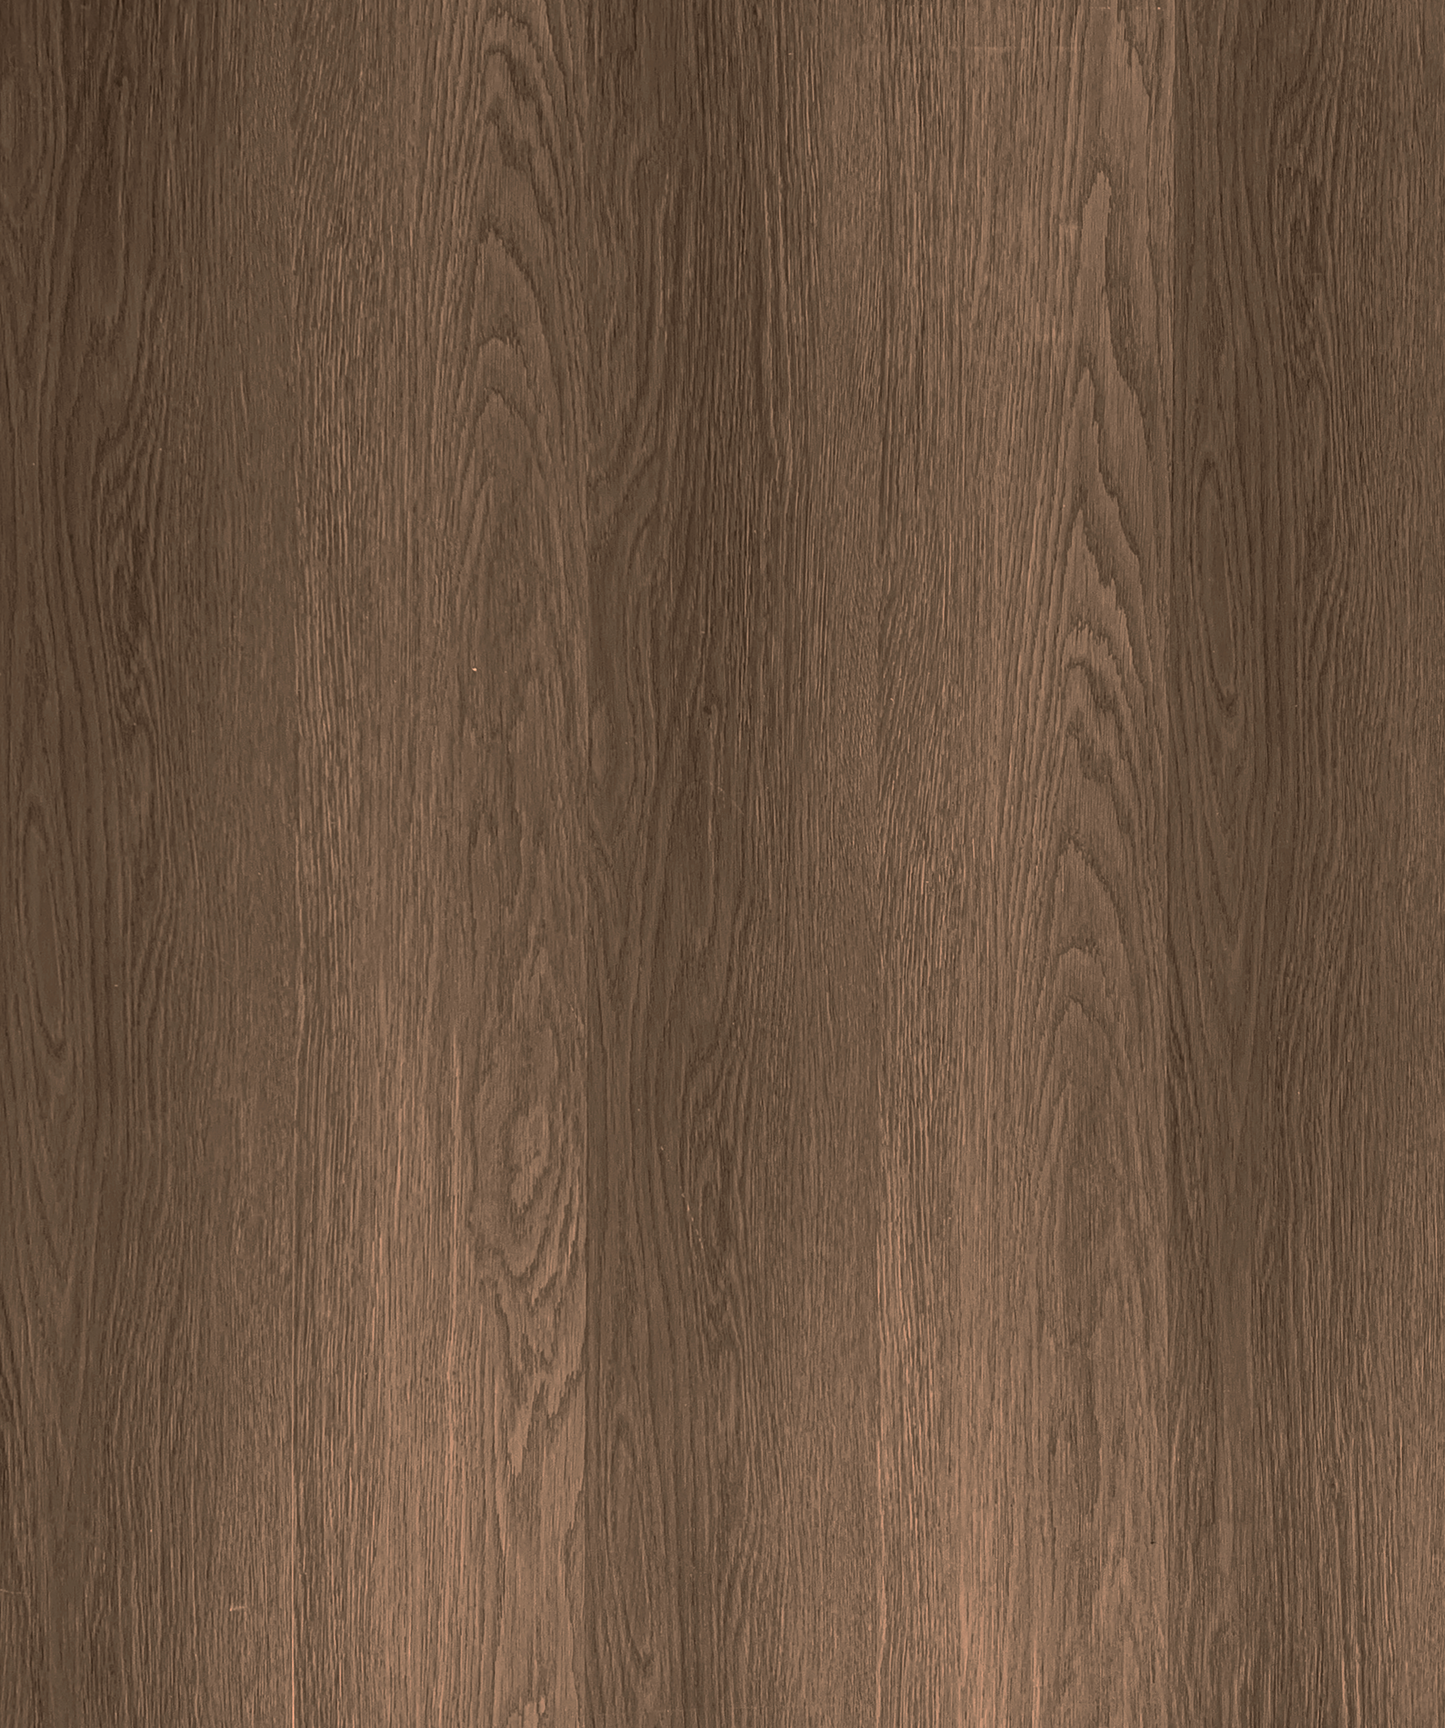 Walnut Oak 208 7x48 Wood Collection, 5mm, 36lbs, 12mil, 9pcs, 21.51sf, $1.49/sf